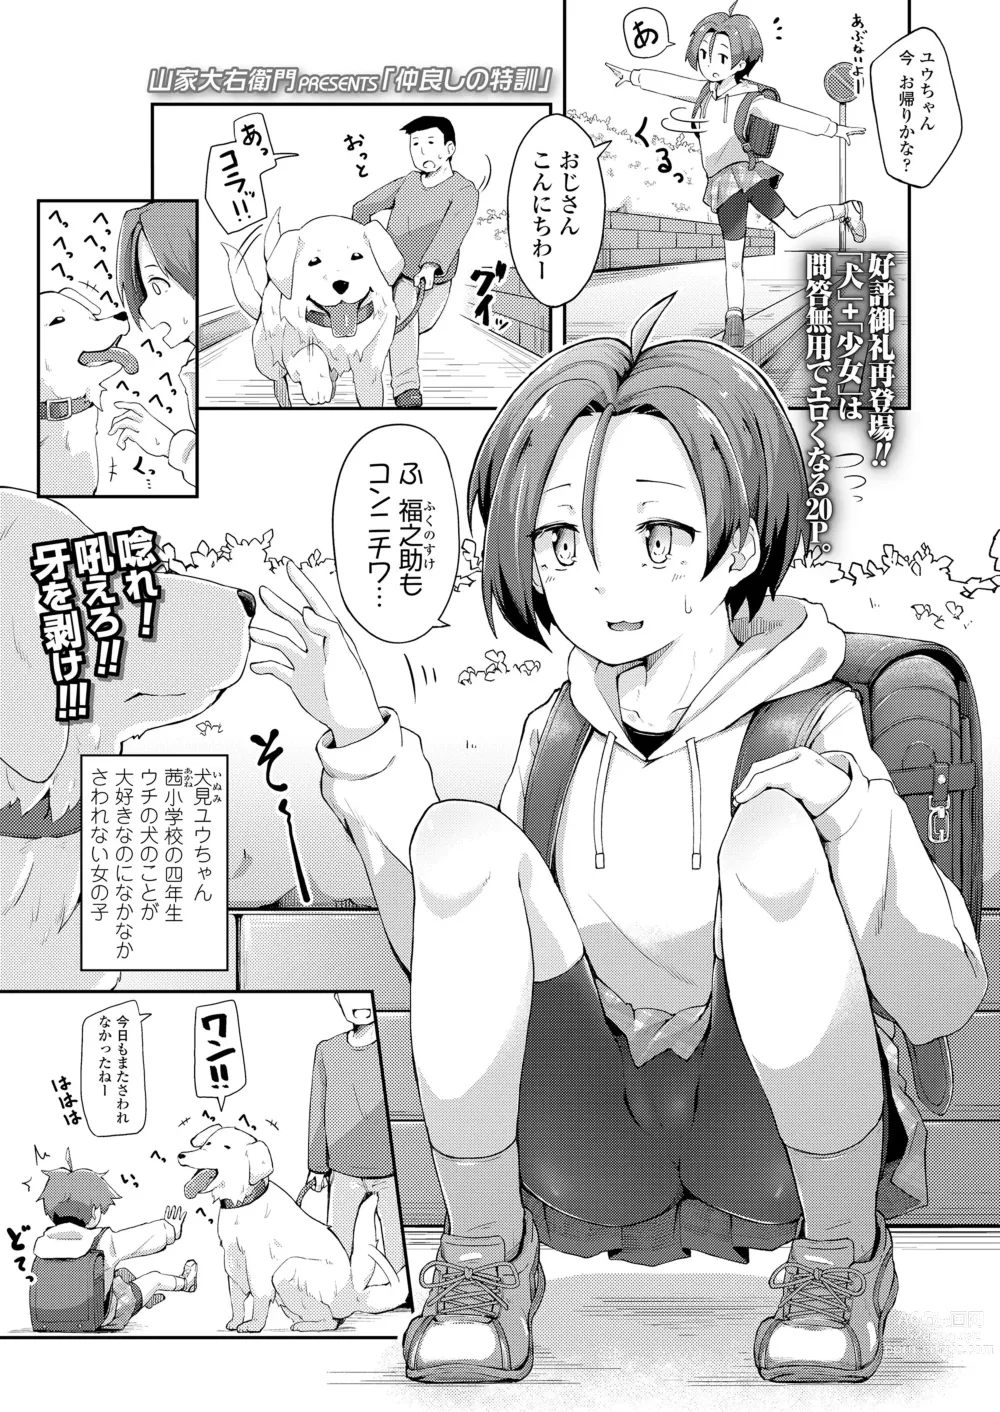 Page 1 of manga Nakayoshi no Tokkun